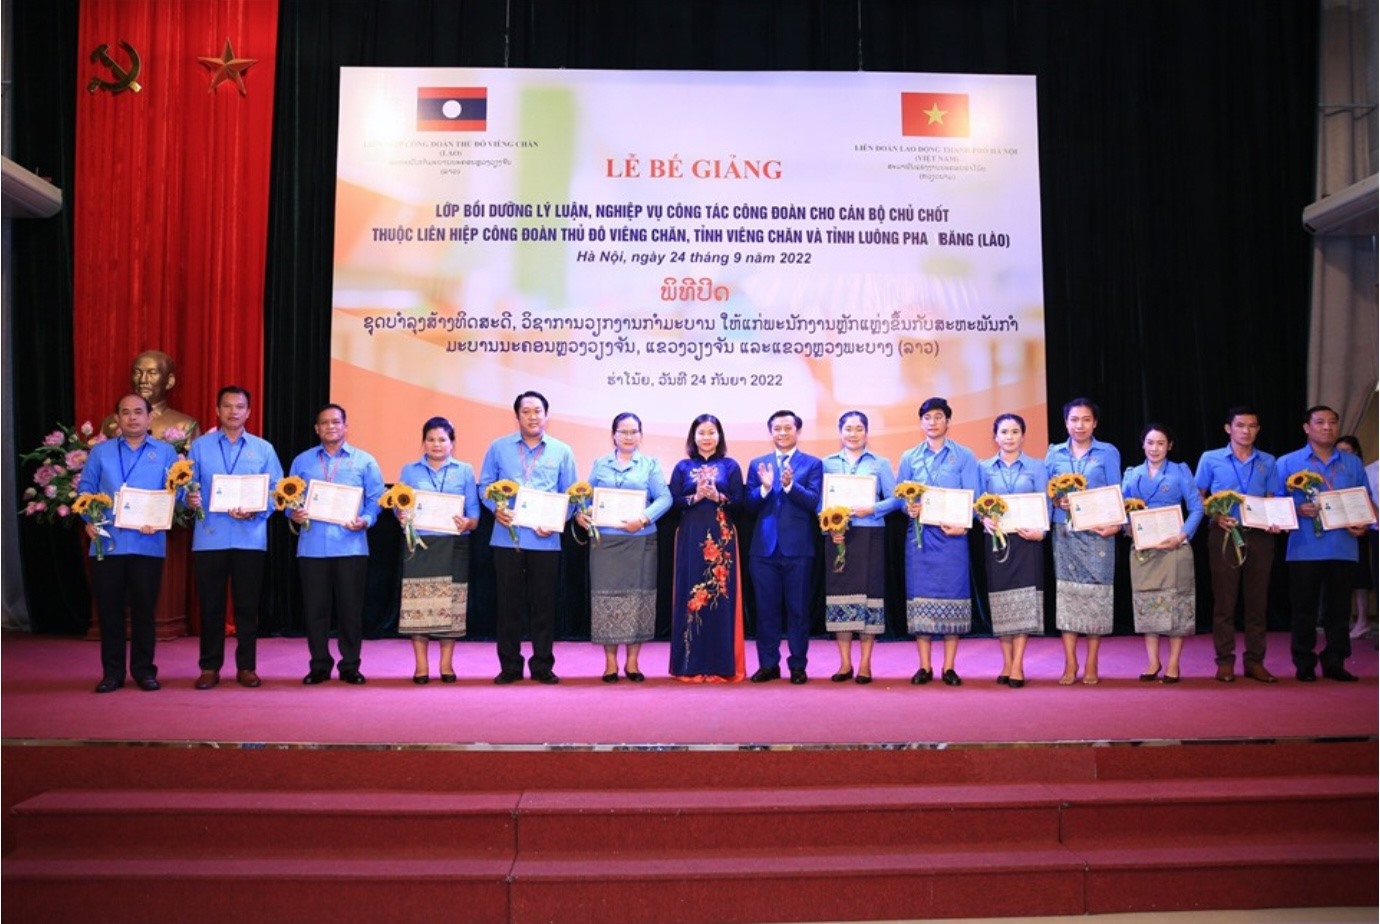 Phó Bí thư Thường trực Thành ủy Hà Nội Nguyễn Thị Tuyến, Phó Đại sứ Lào tại Việt Nam Chan Thaphon Khammanychan trao chứng chỉ tốt nghiệp cho các cán bộ Liên hiệp Công đoàn Lào.